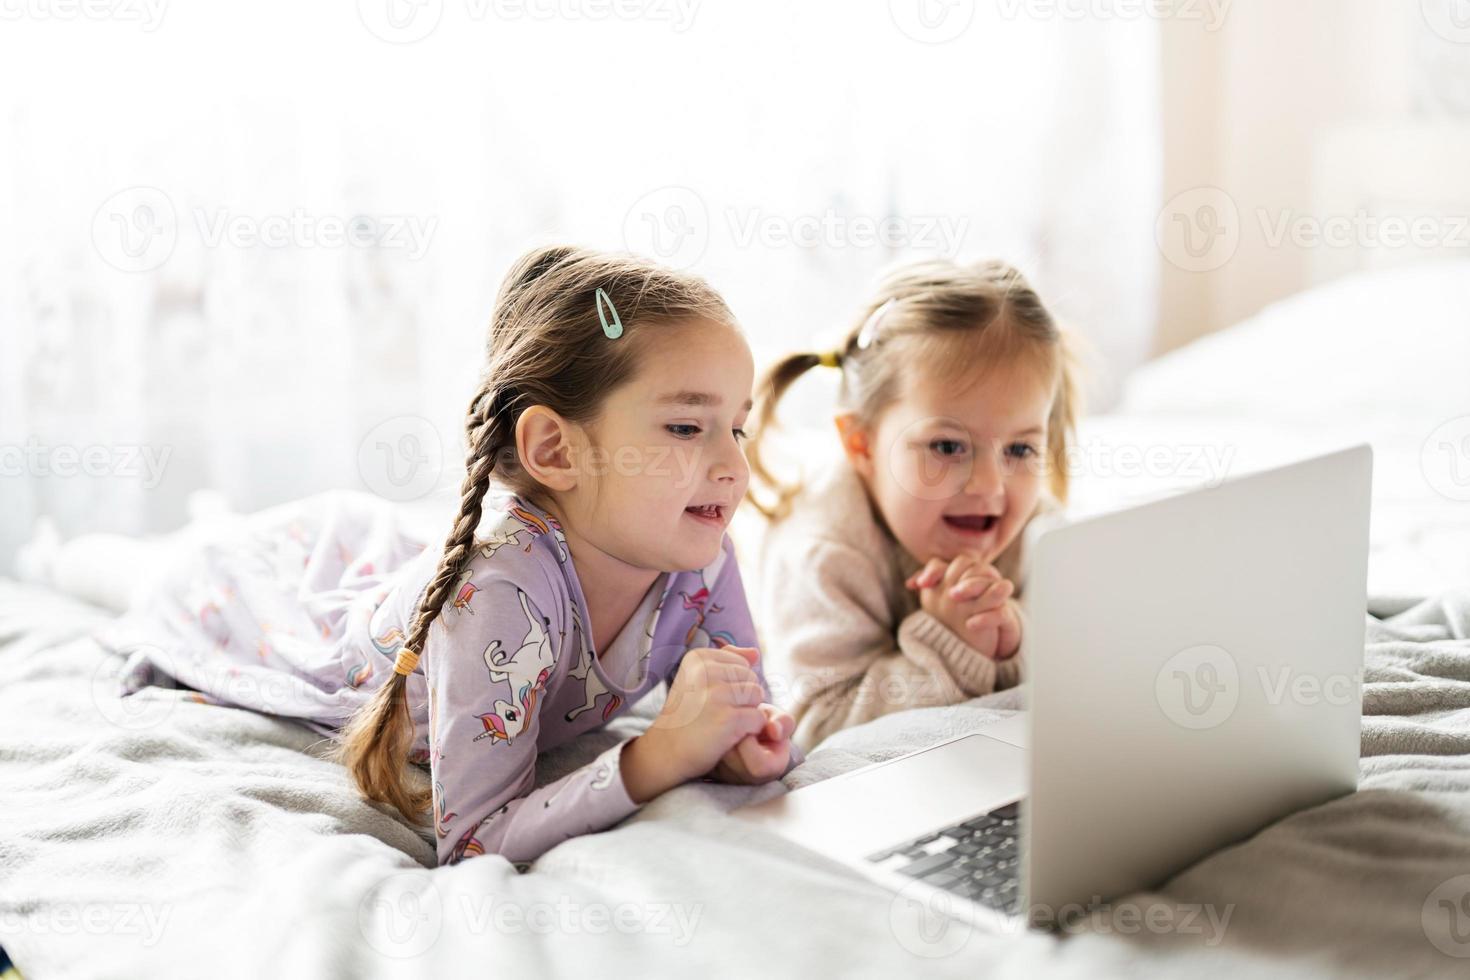 dos muchachas hermanas acecho en ordenador portátil. tecnología y hogar concepto. foto